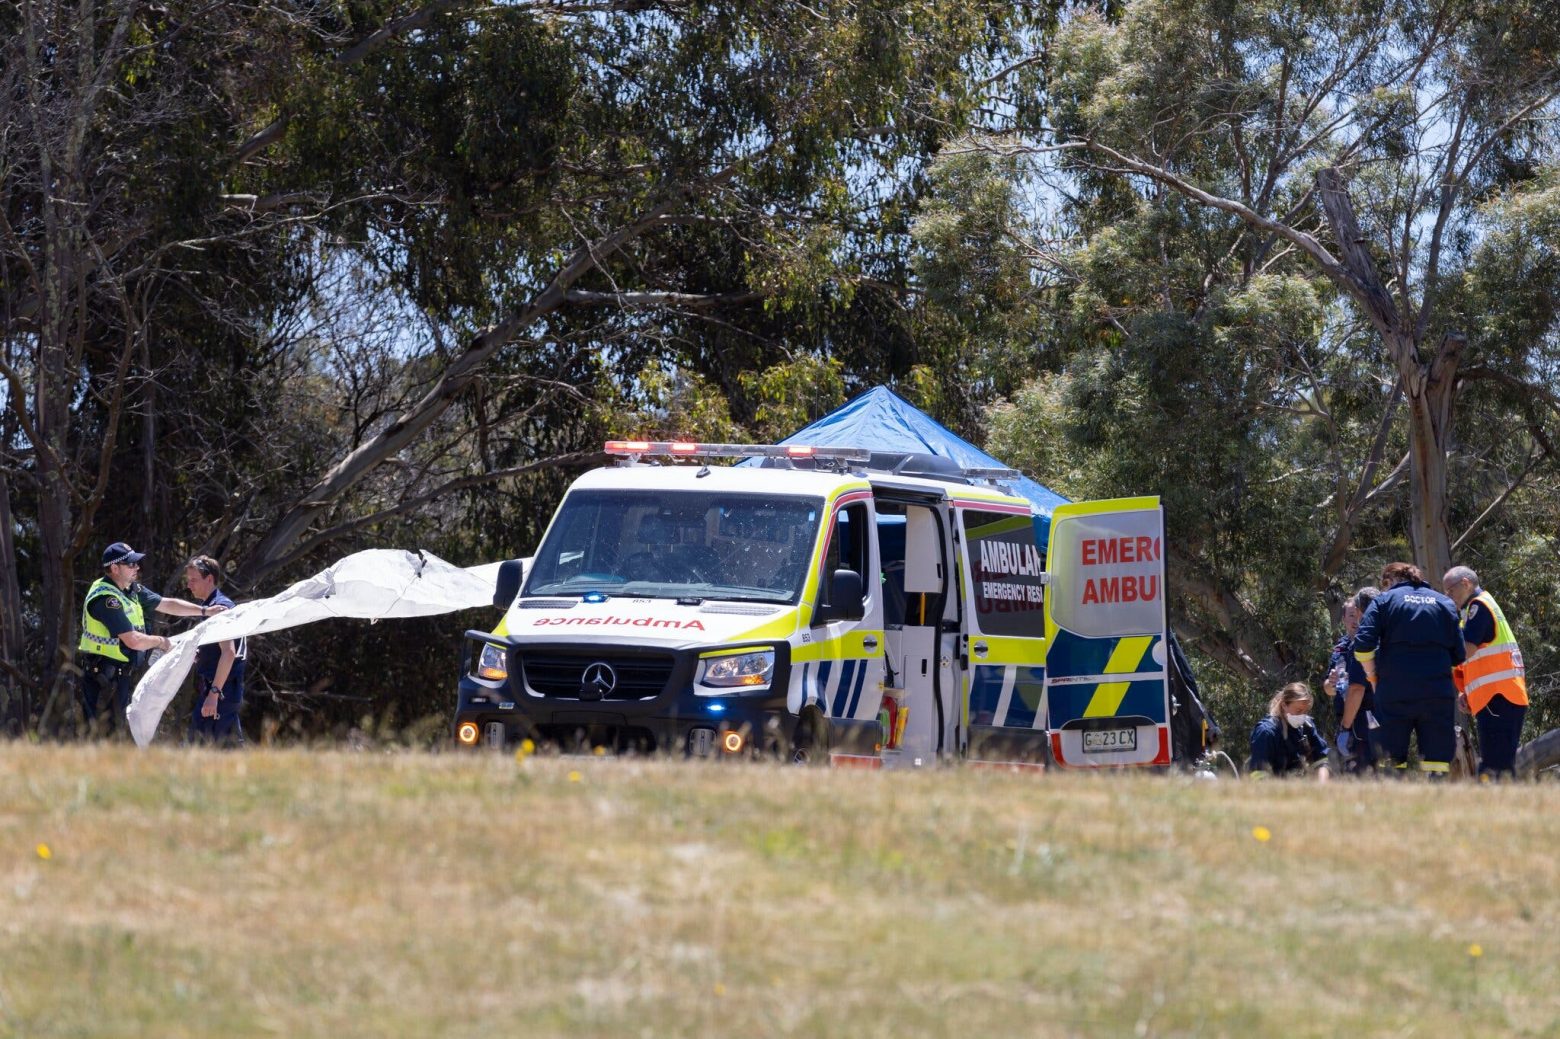 Αυστραλία - Δύο νεκρά παιδιά στη διάρκεια σχολικής γιορτής - Έπεσαν από ύψος 10 μέτρων